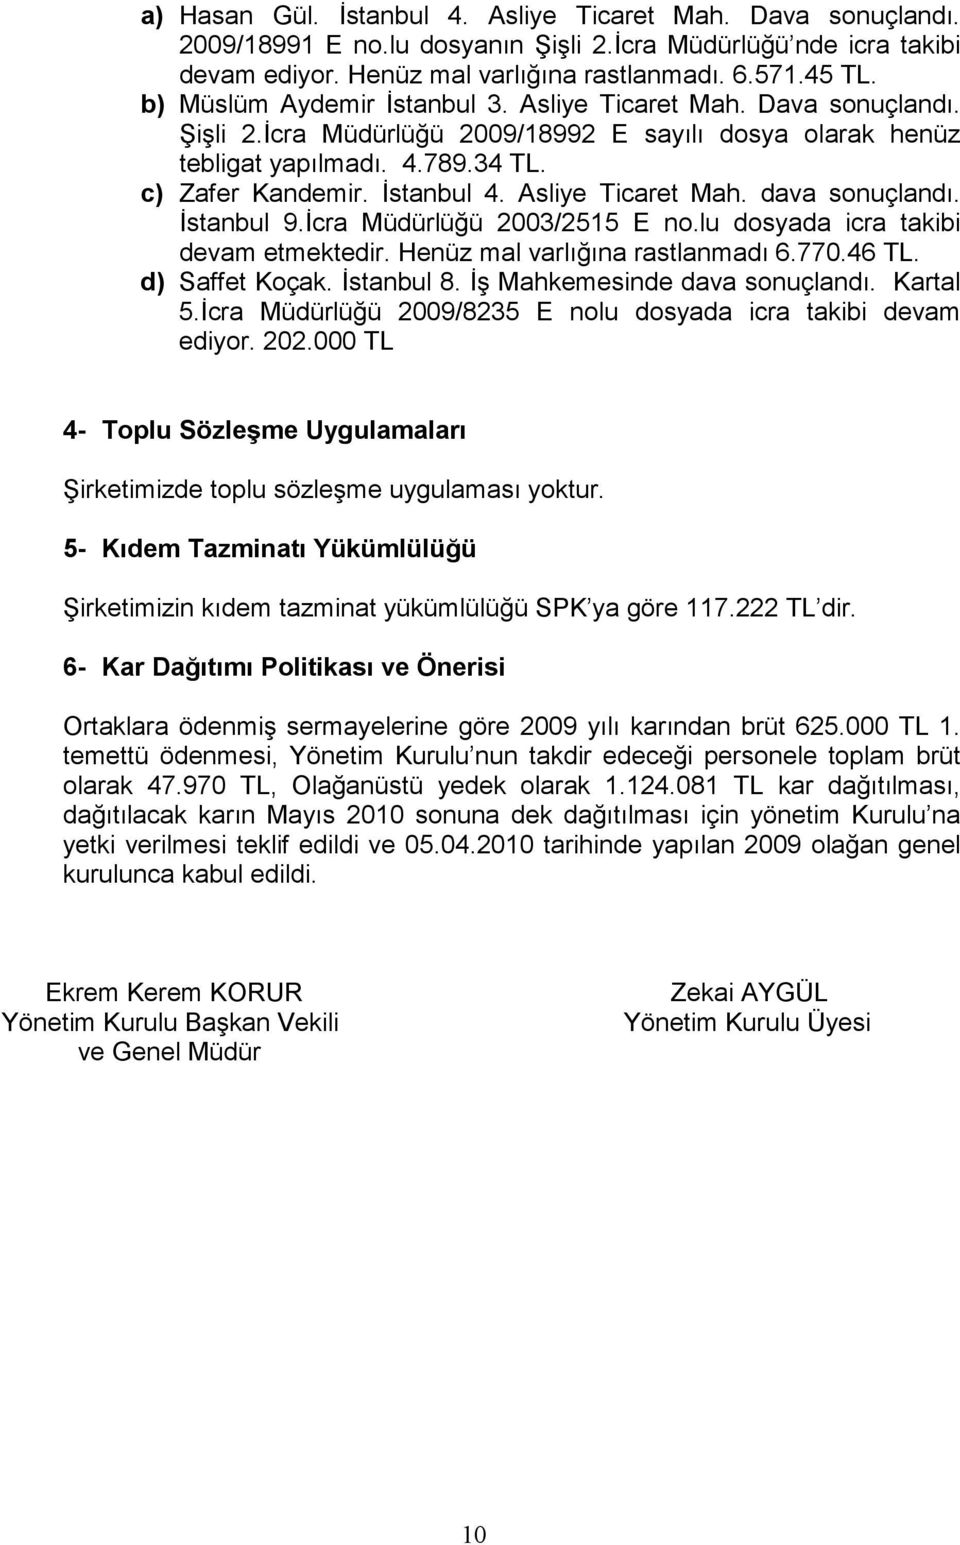 Asliye Ticaret Mah. dava sonuçlandı. İstanbul 9.İcra Müdürlüğü 23/2515 E no.lu dosyada icra takibi devam etmektedir. Henüz mal varlığına rastlanmadı 6.77.46 TL. d) Saffet Koçak. İstanbul 8.